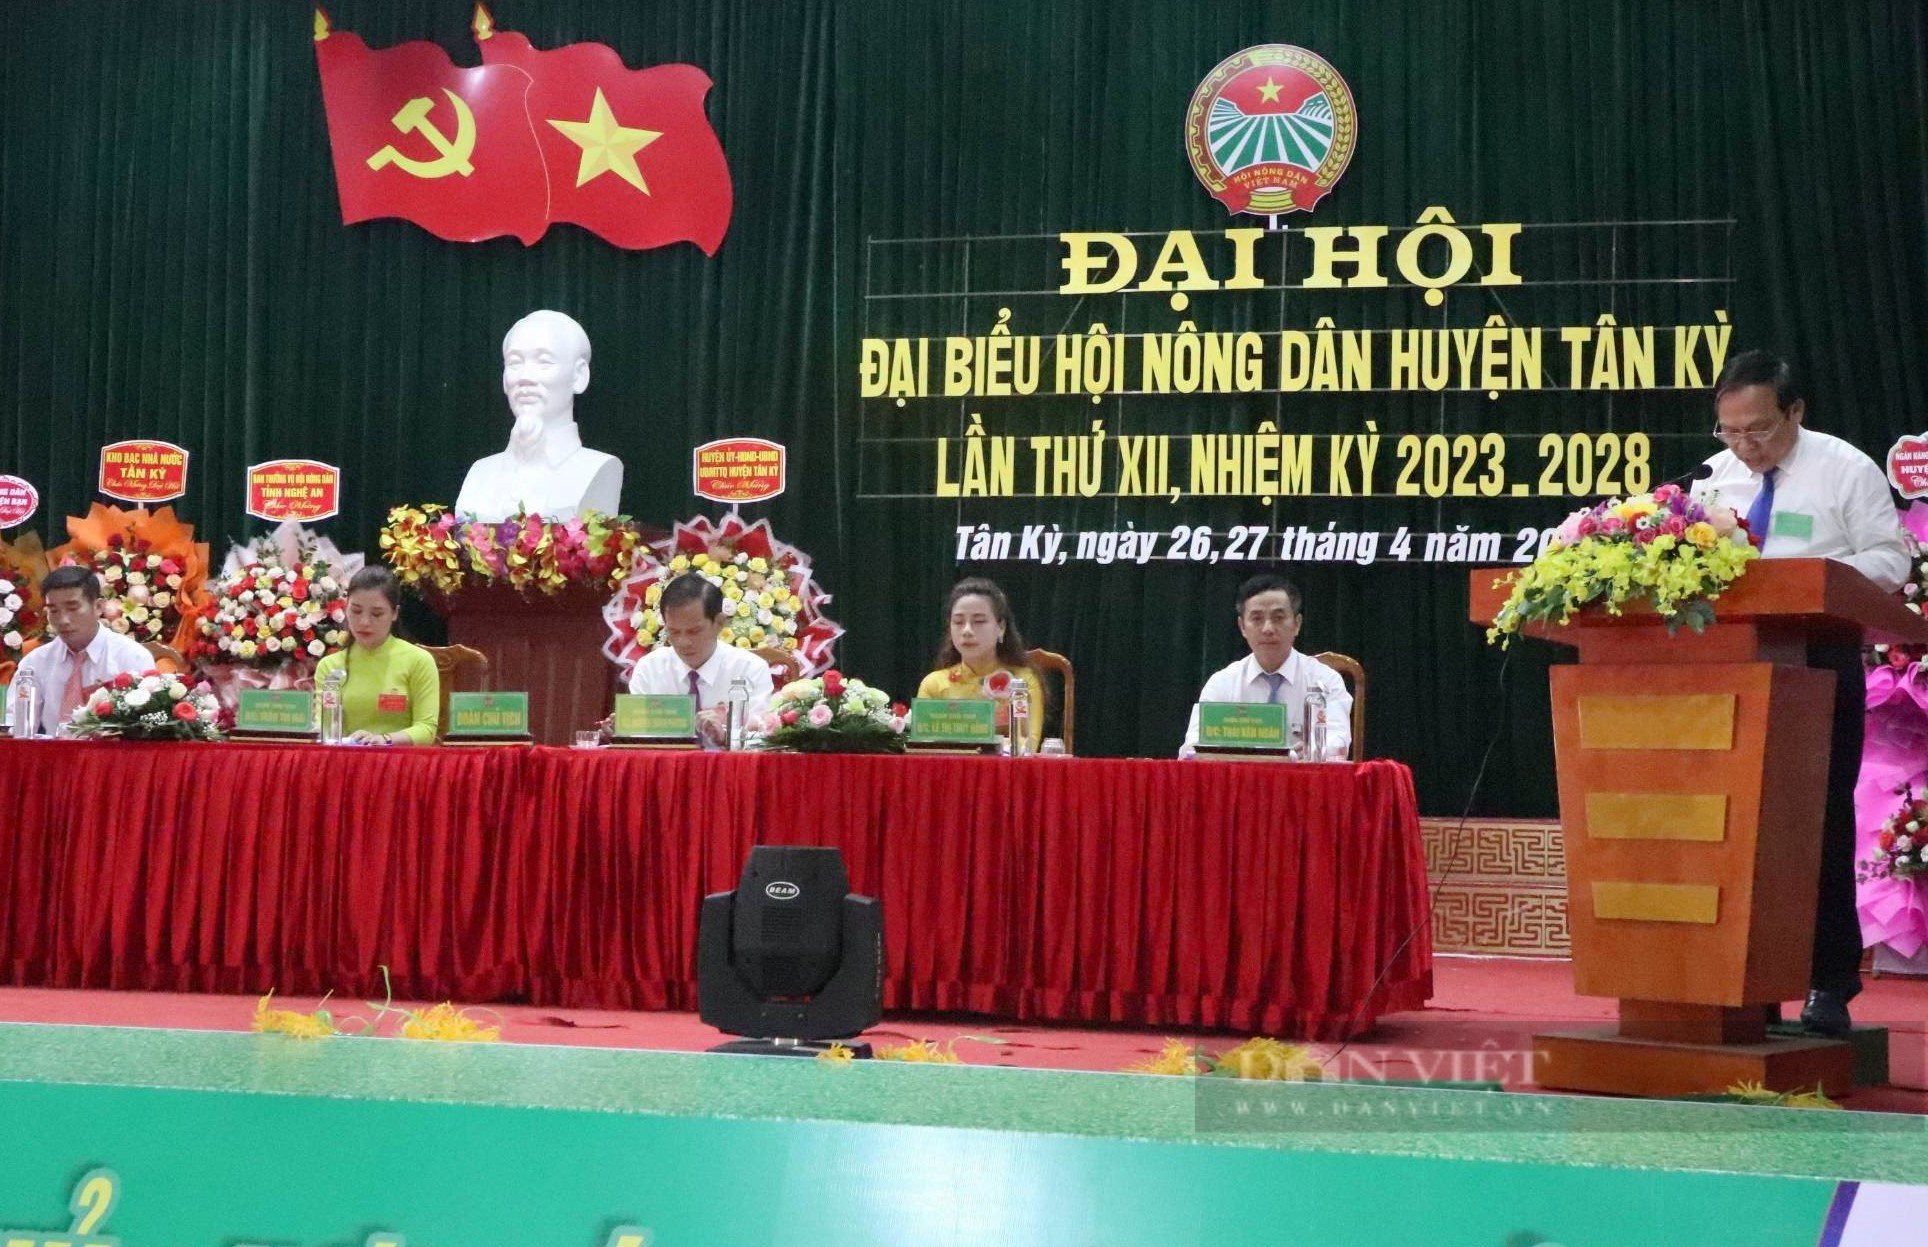 Hội Nông dân huyện Tân Kỳ, tỉnh Nghệ An với những mục tiêu trọng tâm trong nhiệm kỳ mới - Ảnh 1.